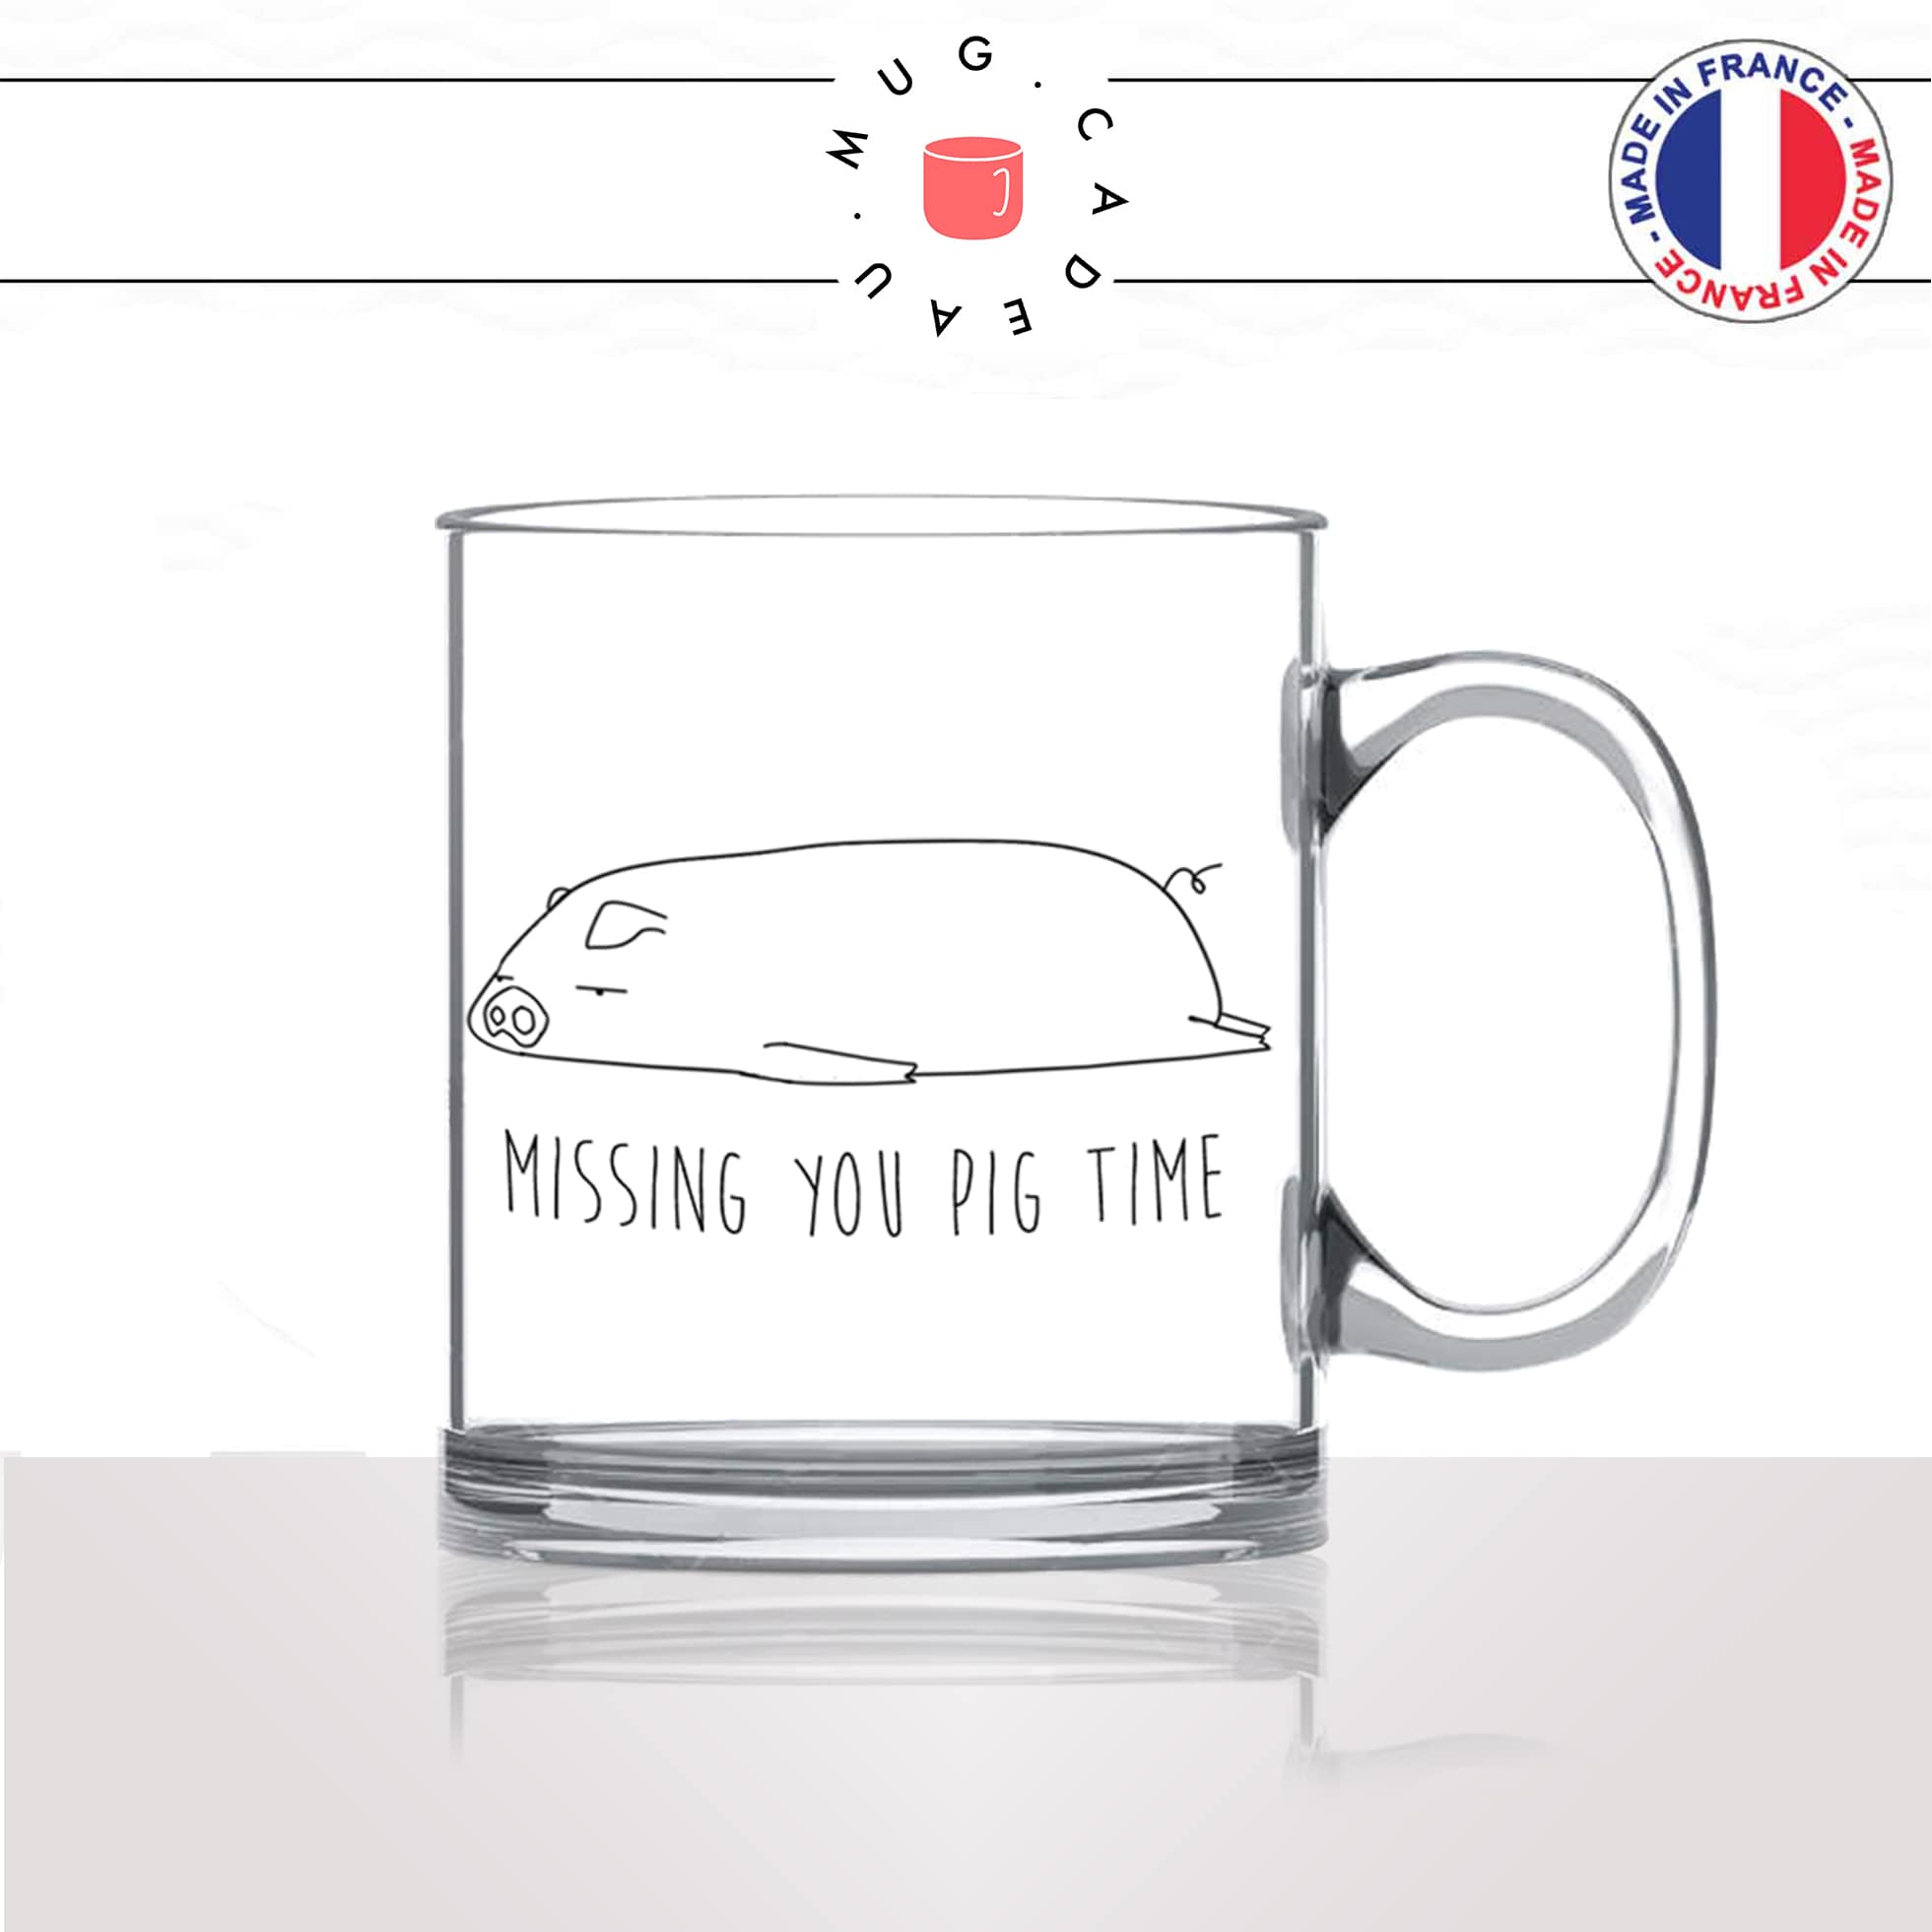 mug-tasse-en-verre-transparent-missing-you-tu-me-manque-pig-time-cochon-drole-mignon-animal-noir-fun-café-thé-idée-cadeau-original-personnalisé2-min